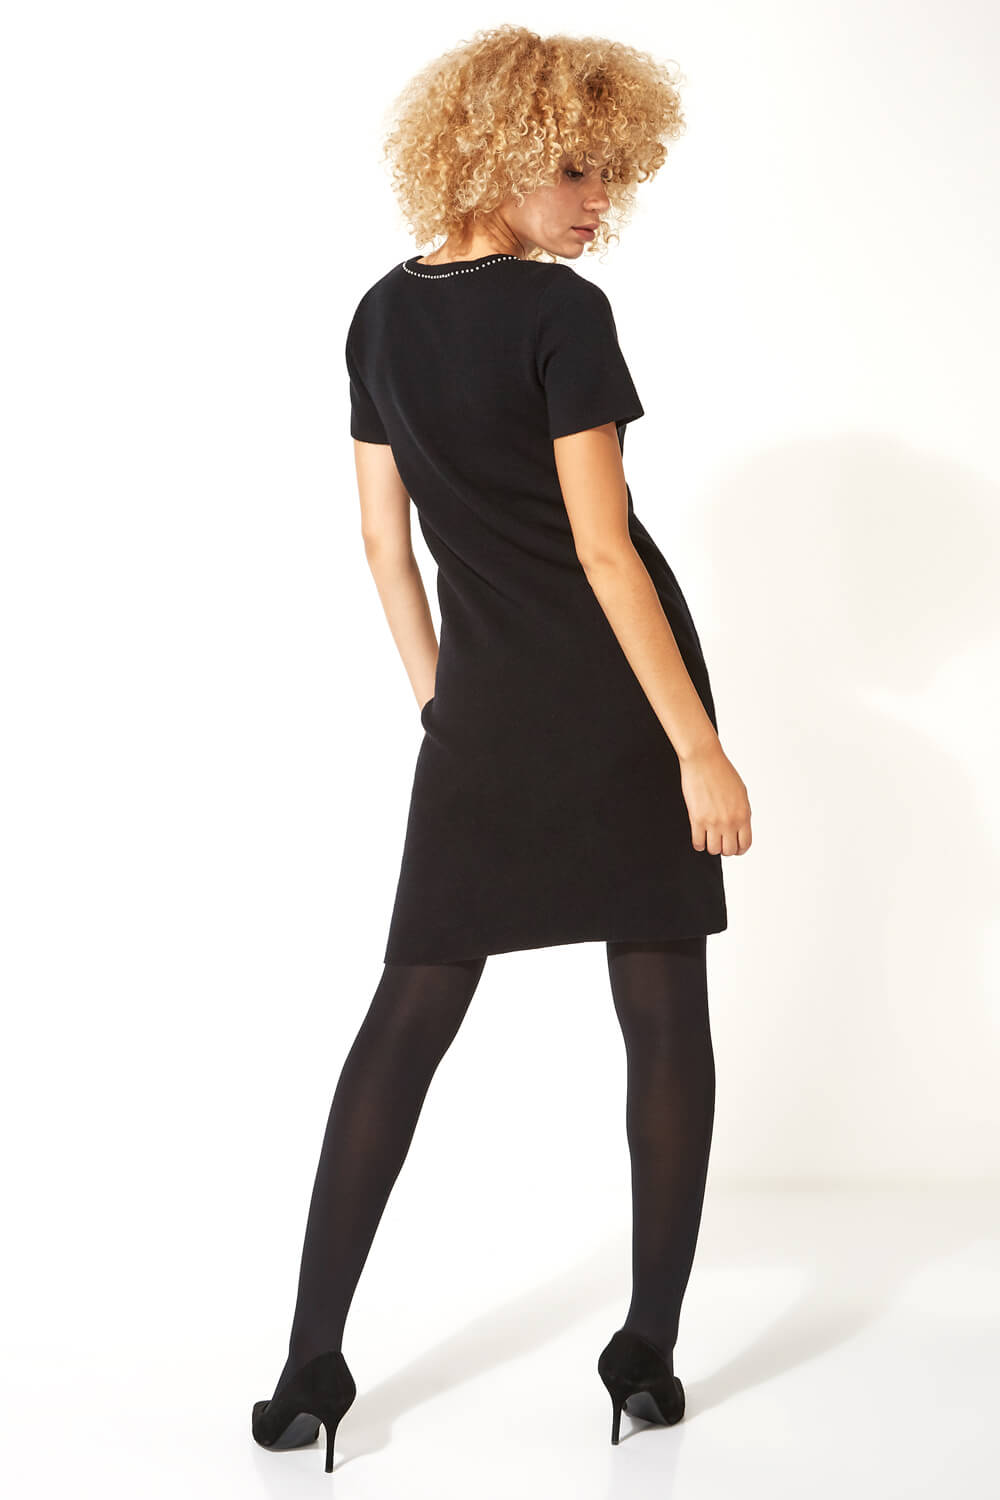 Black Pearl Embellished Short Sleeve Dress, Image 3 of 5